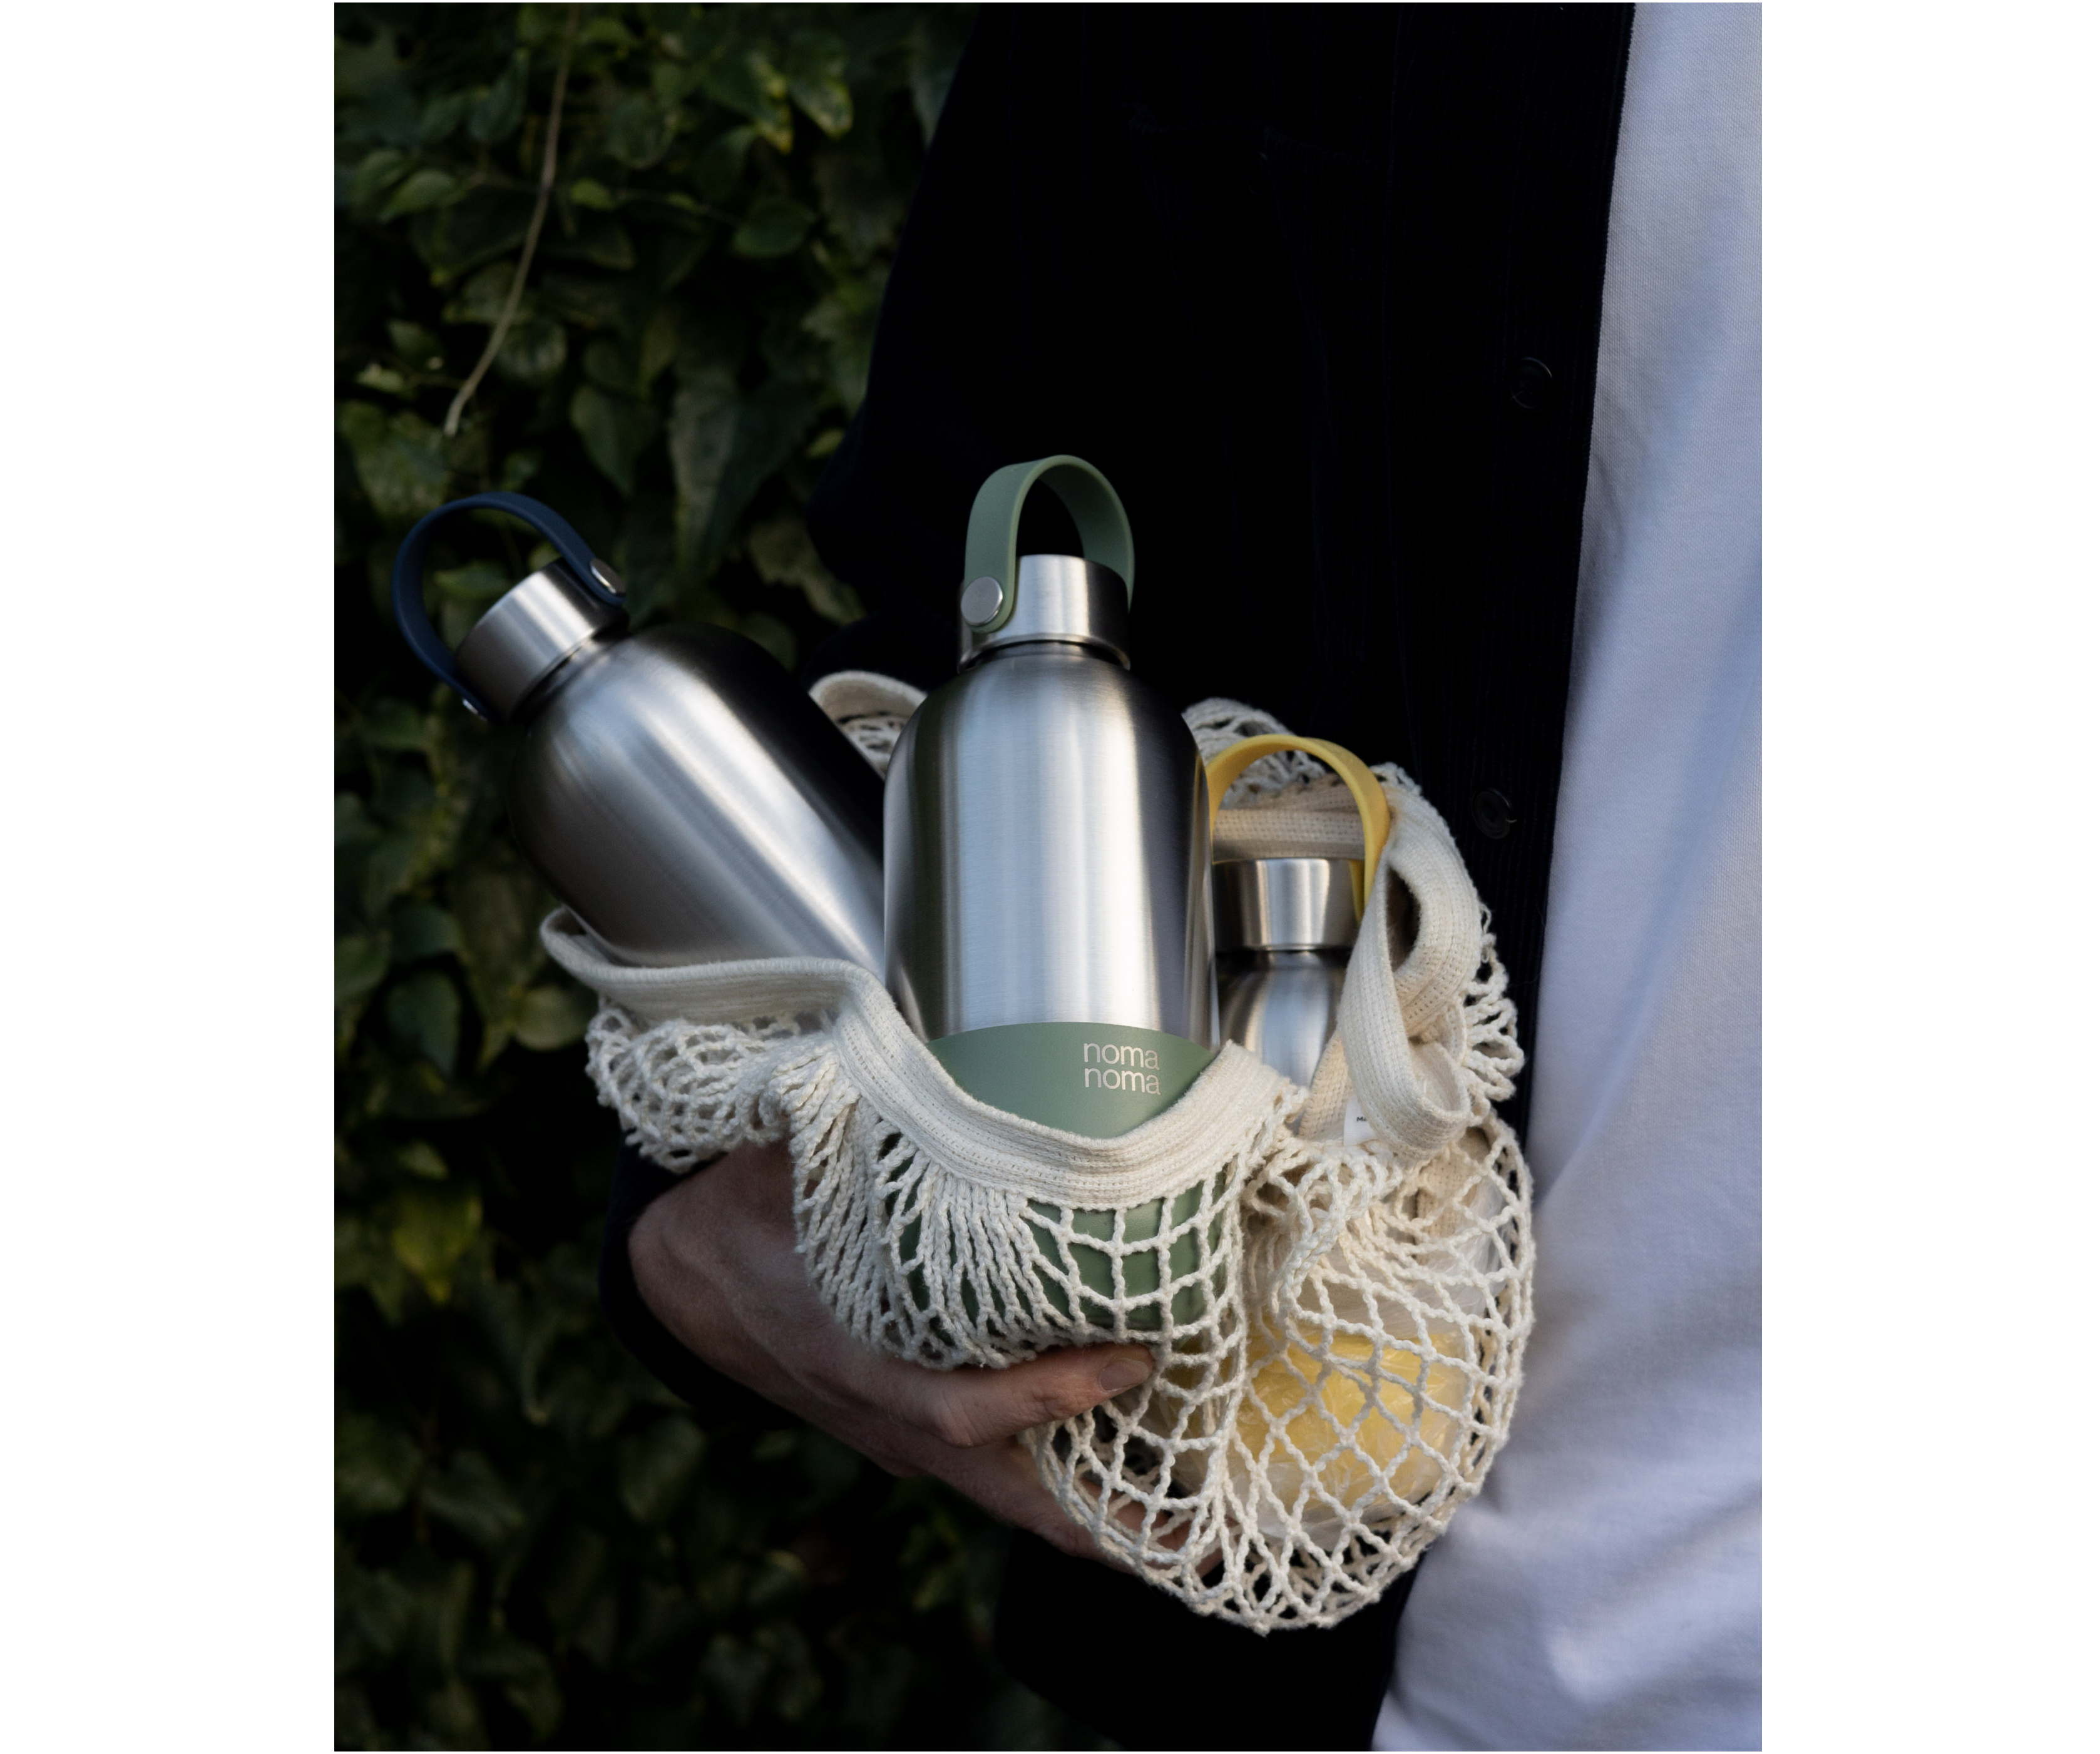 Drei noma noma Isolierflaschen liegen in einem Jutebeutel und werden von einem jemanden im Arm getragen.